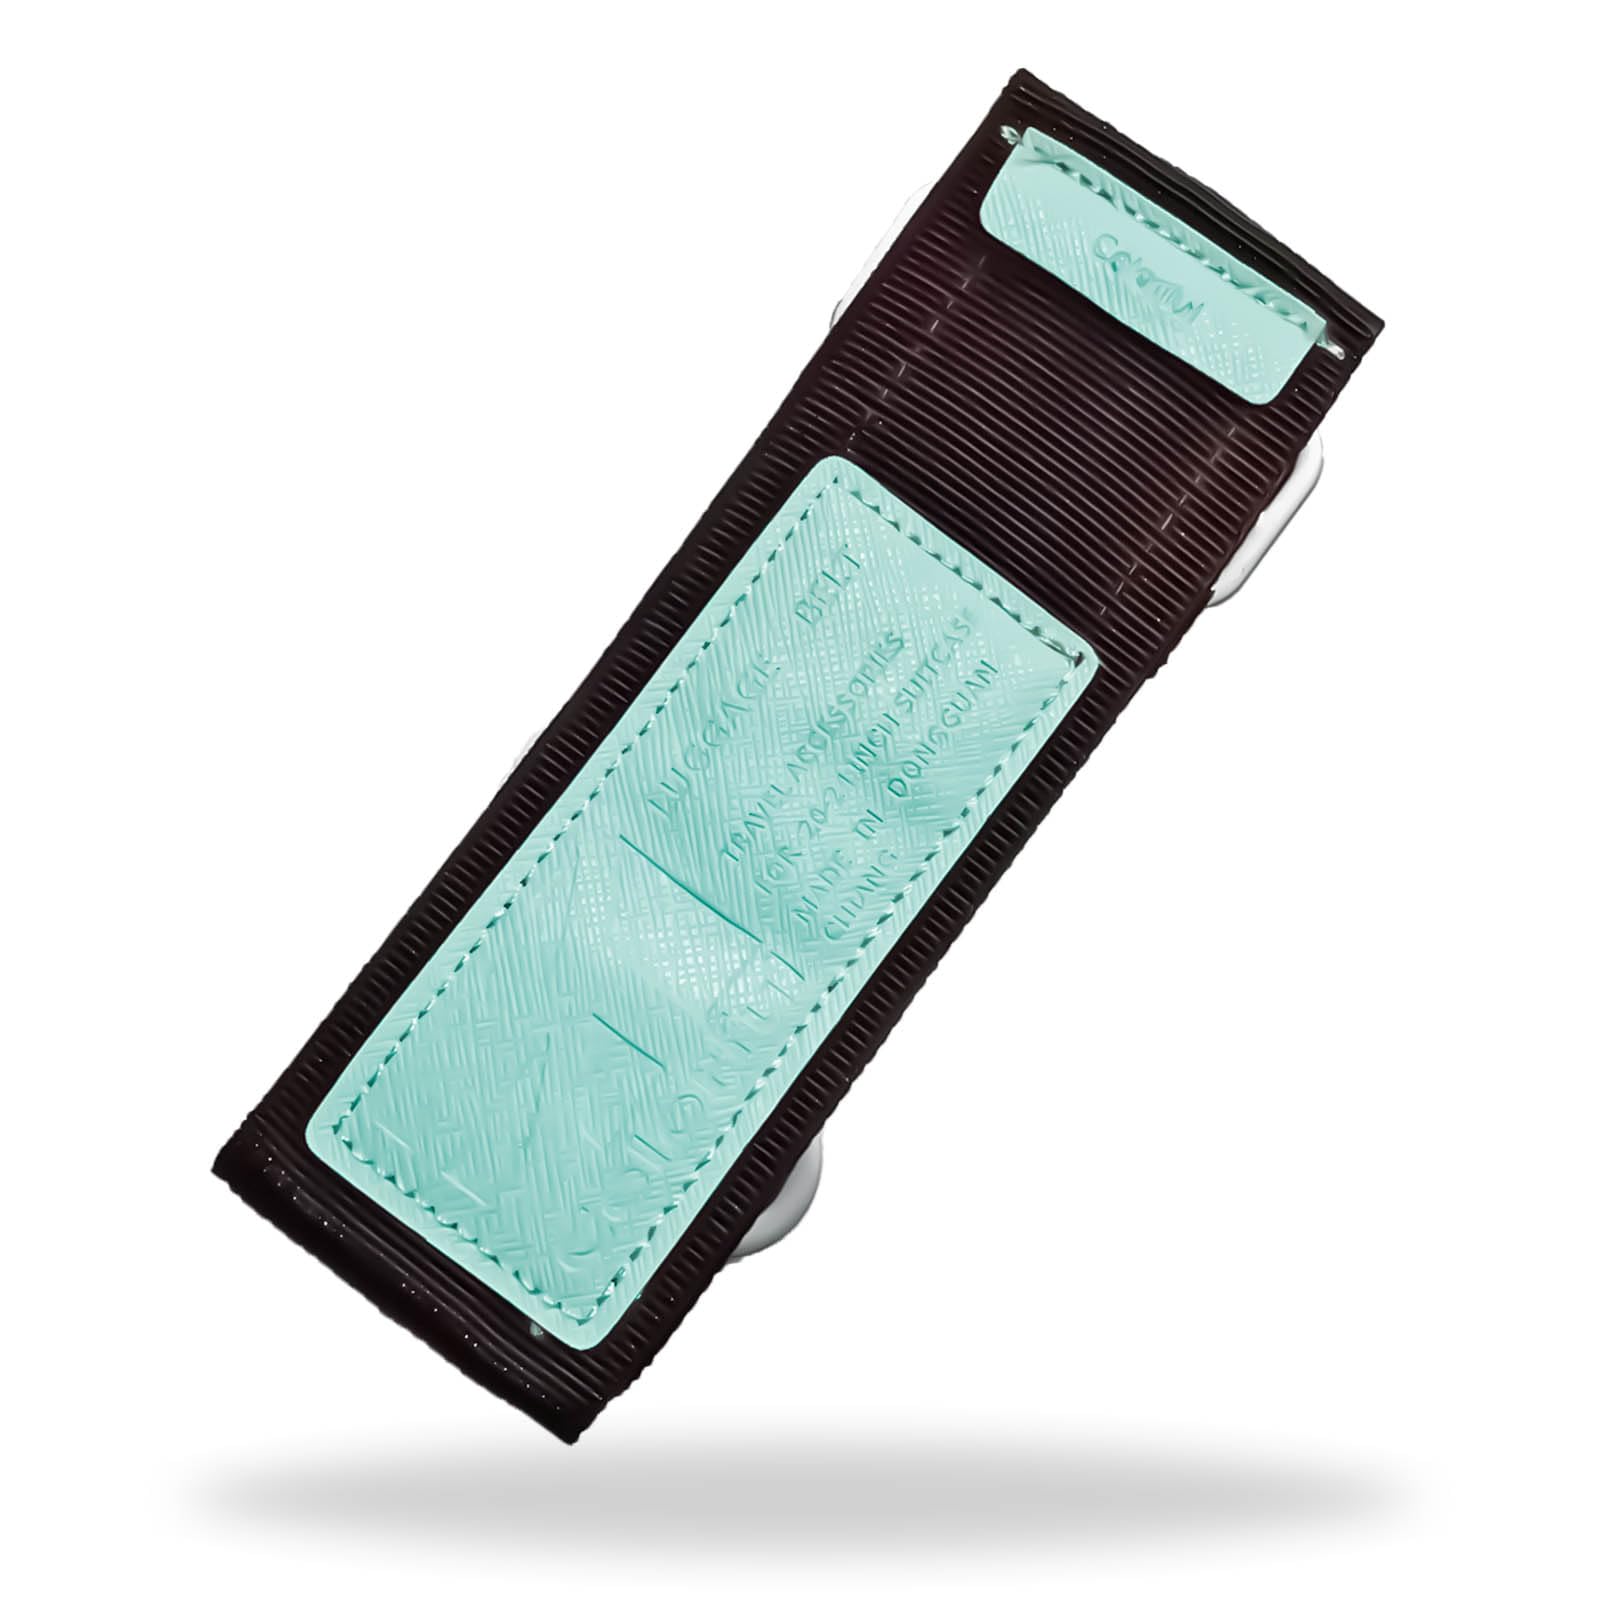 FGY スーツケースベルト マジックテープ バッグ固定 キャリーケース 目印 調整可能 荷物ストラップ 散乱防止 固定ベルト スーツケースバ